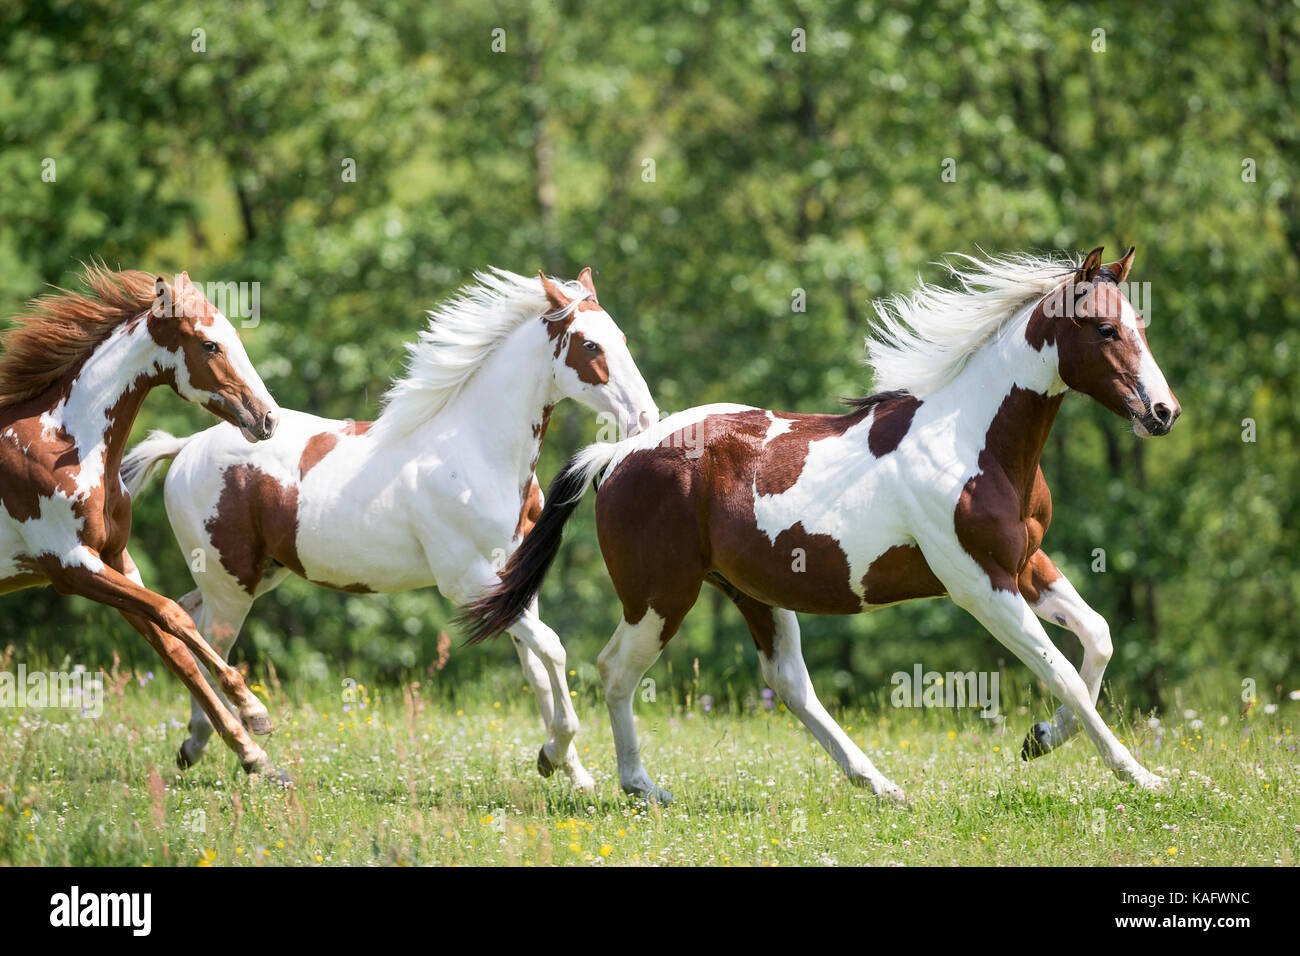 American Paint Horse. Tre colts galopping su un prato. Austria Foto Stock